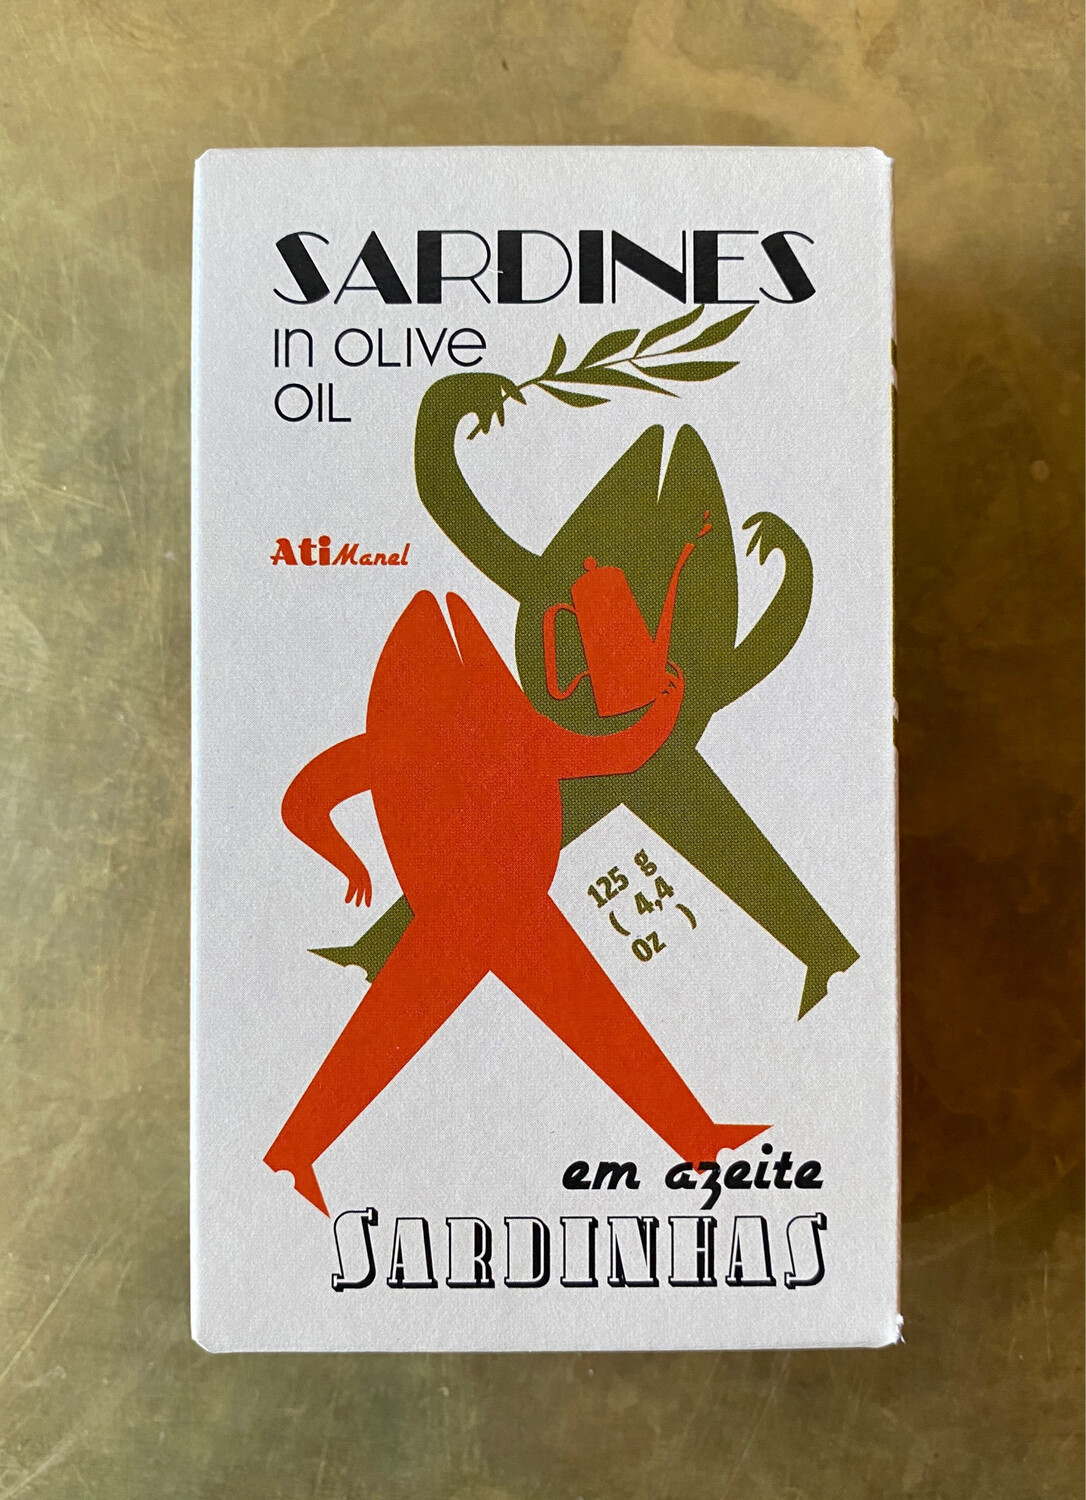 Ati Manel Sardines in Olive Oil